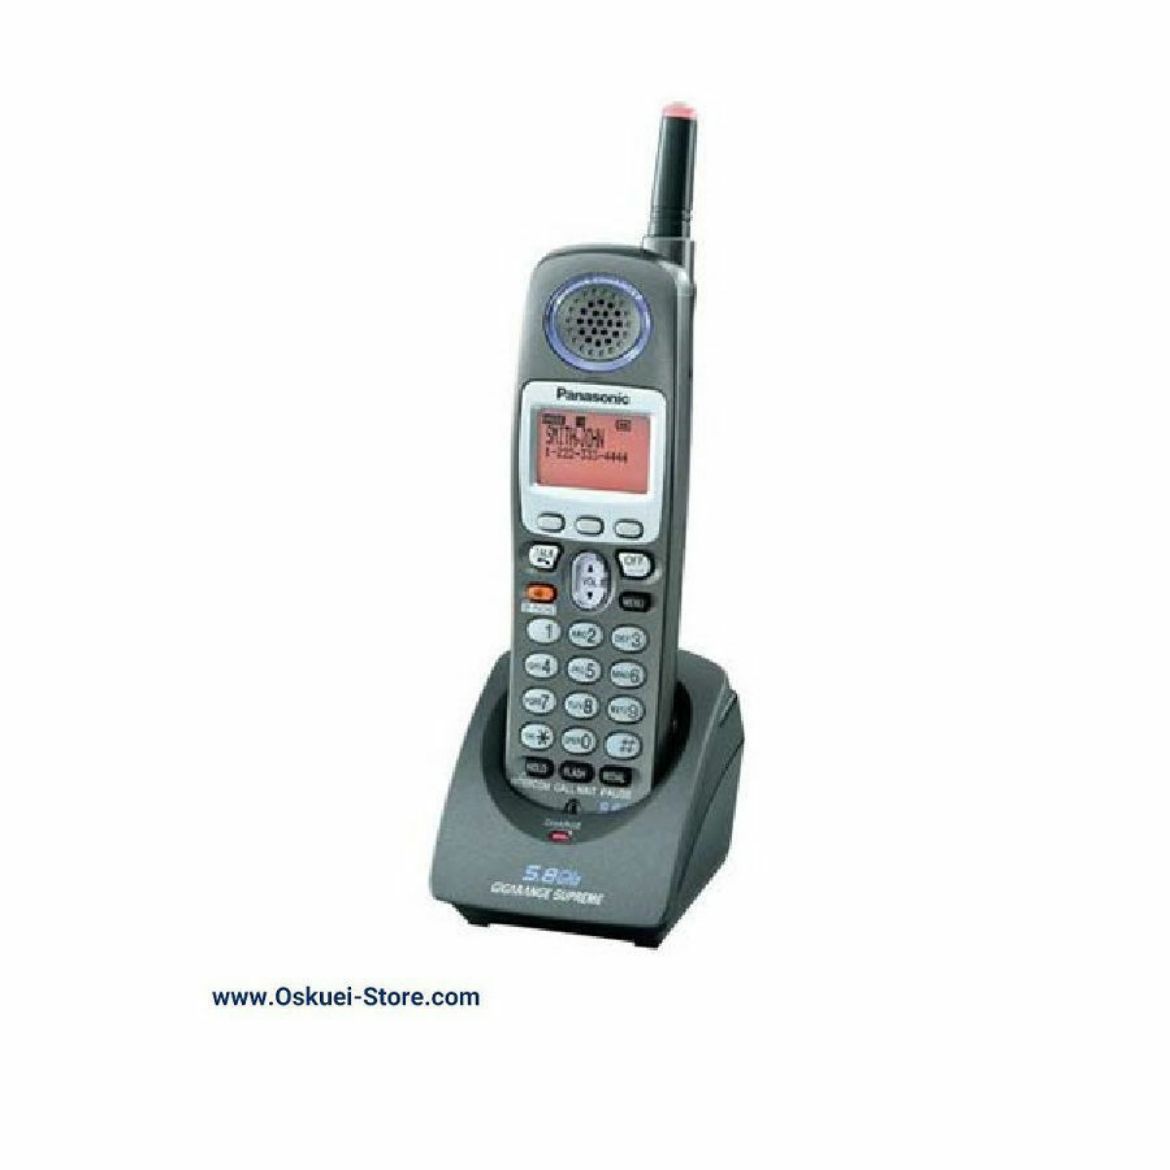 Panasonic KX-TGA650B Cordless Telephone Black